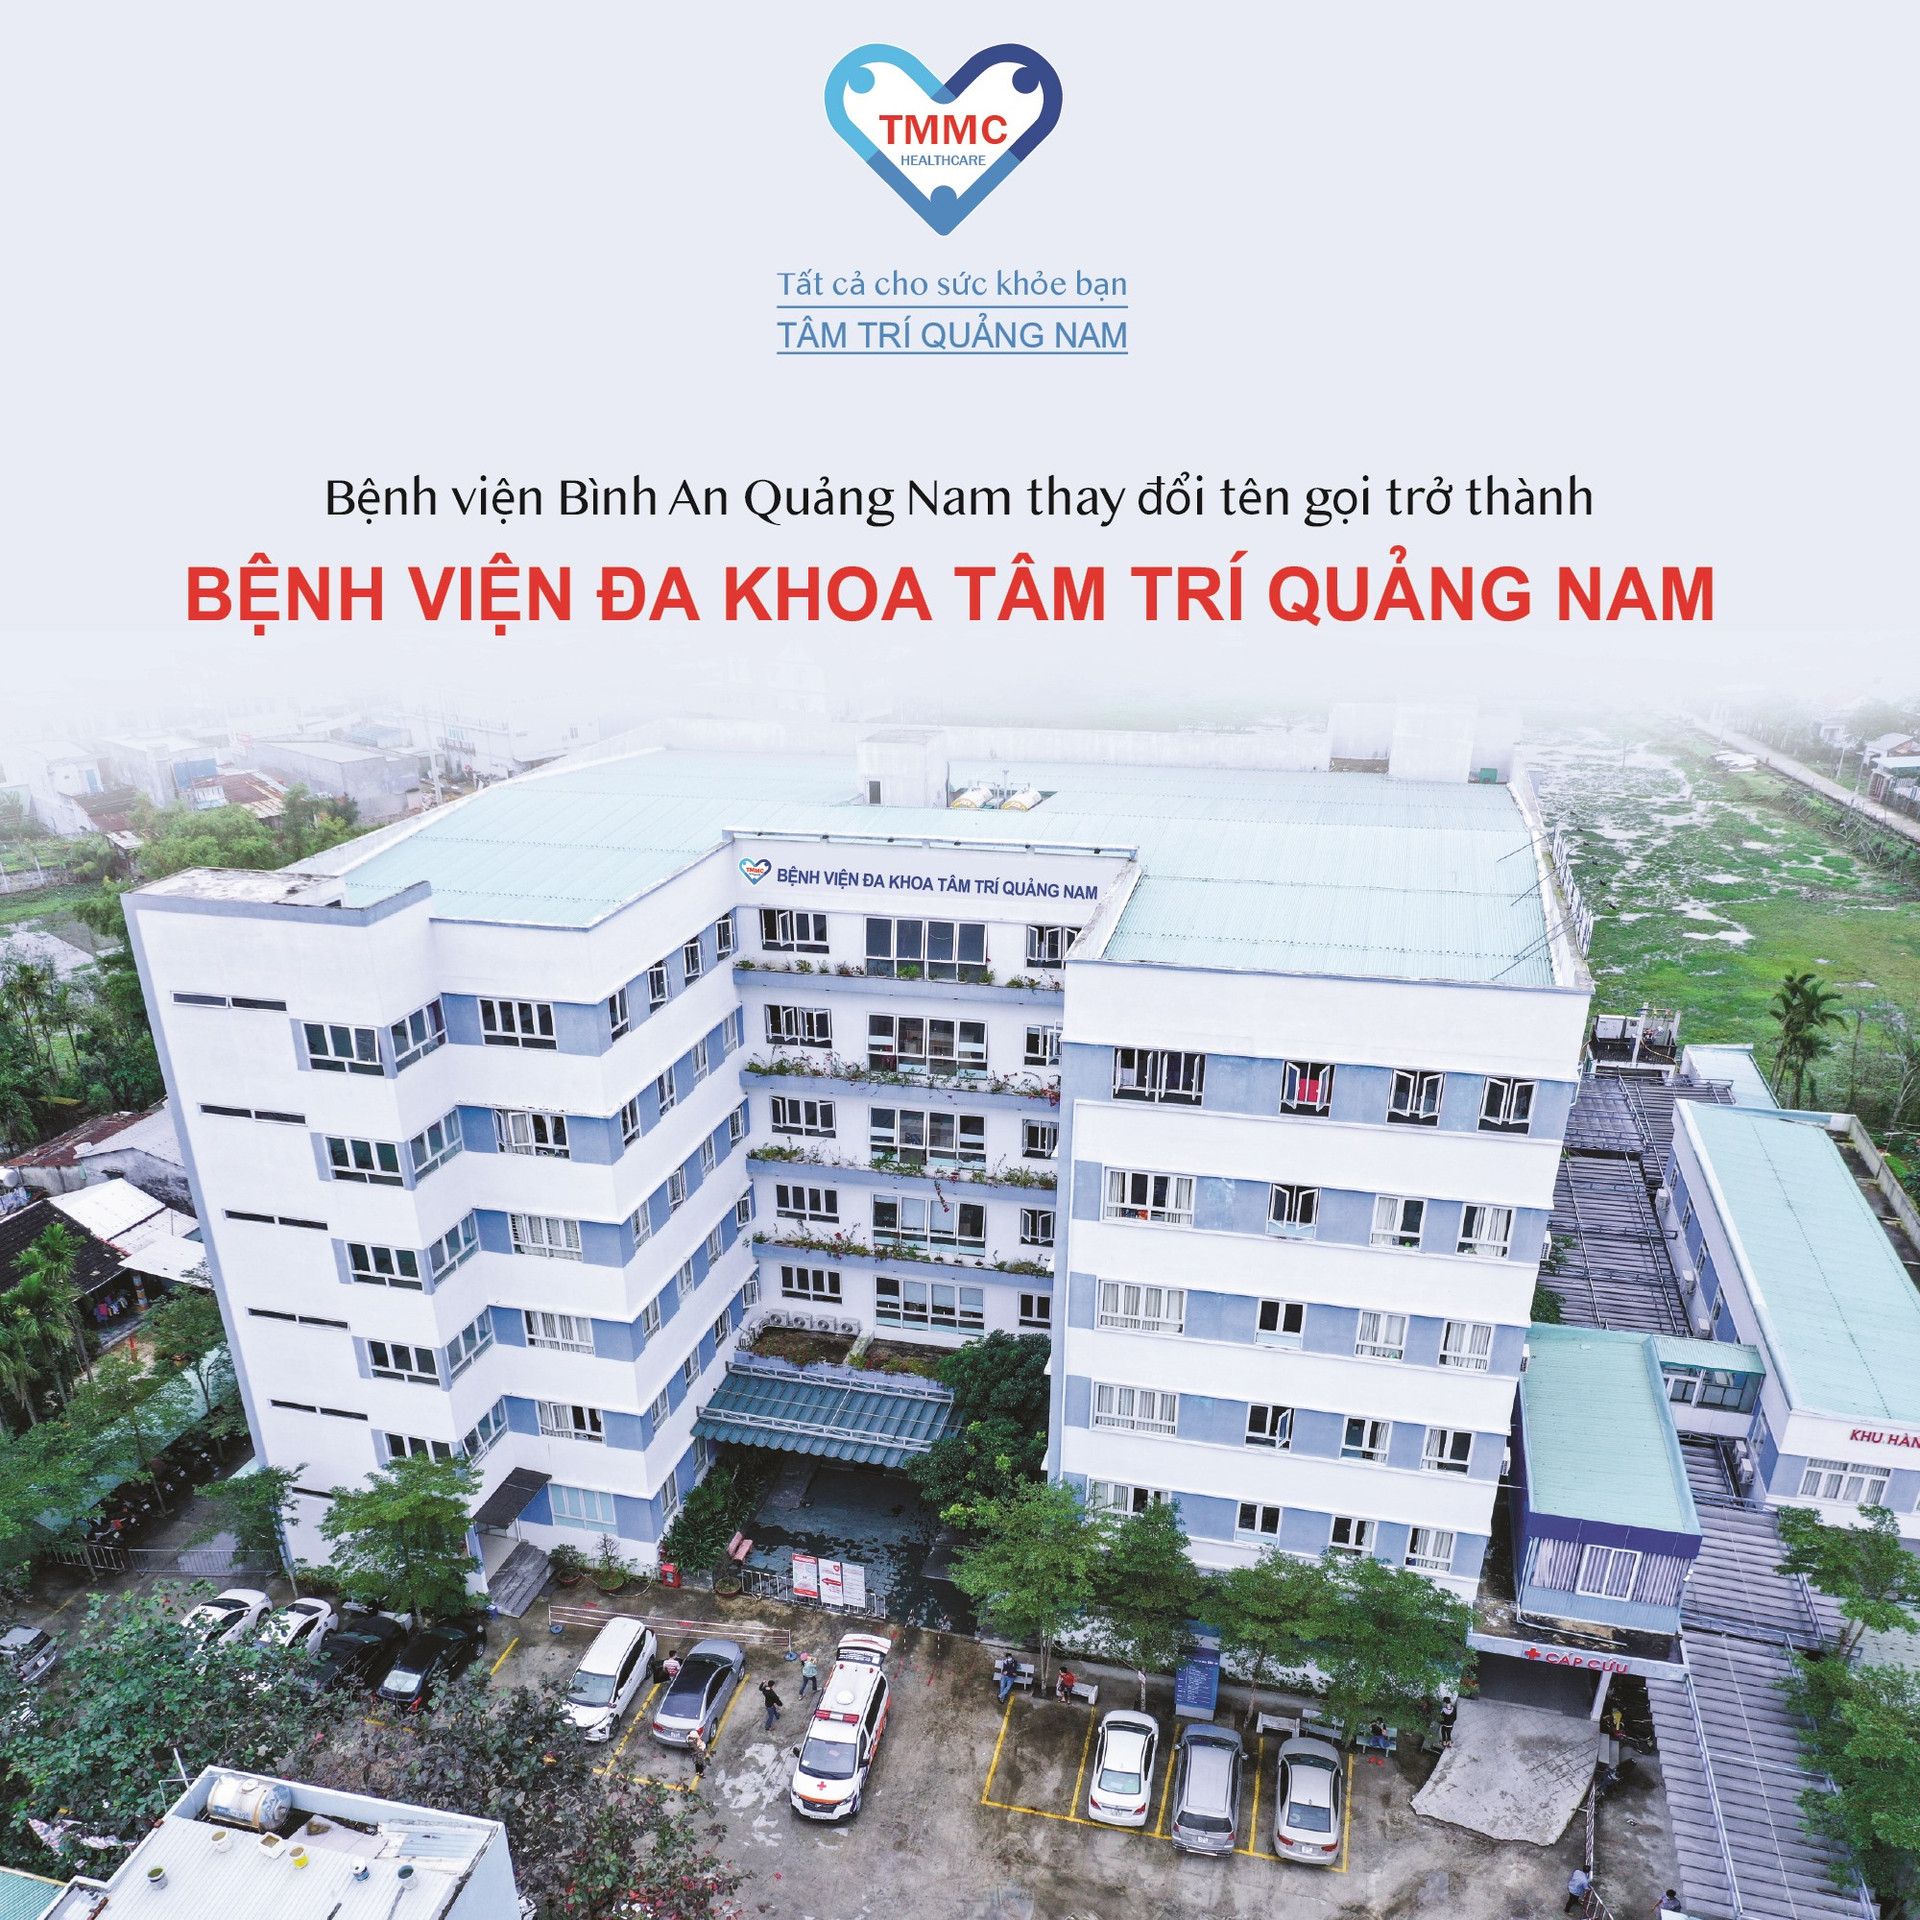 Bệnh viện Đa khoa Tâm Trí Quảng Nam có cơ sở vật chất, trang thiết bị hiện đại cũng như đội ngũ nhân lực chất lượng cao, đáp ứng nhu cầu khám chữa bệnh của người dân. Ảnh: B.L